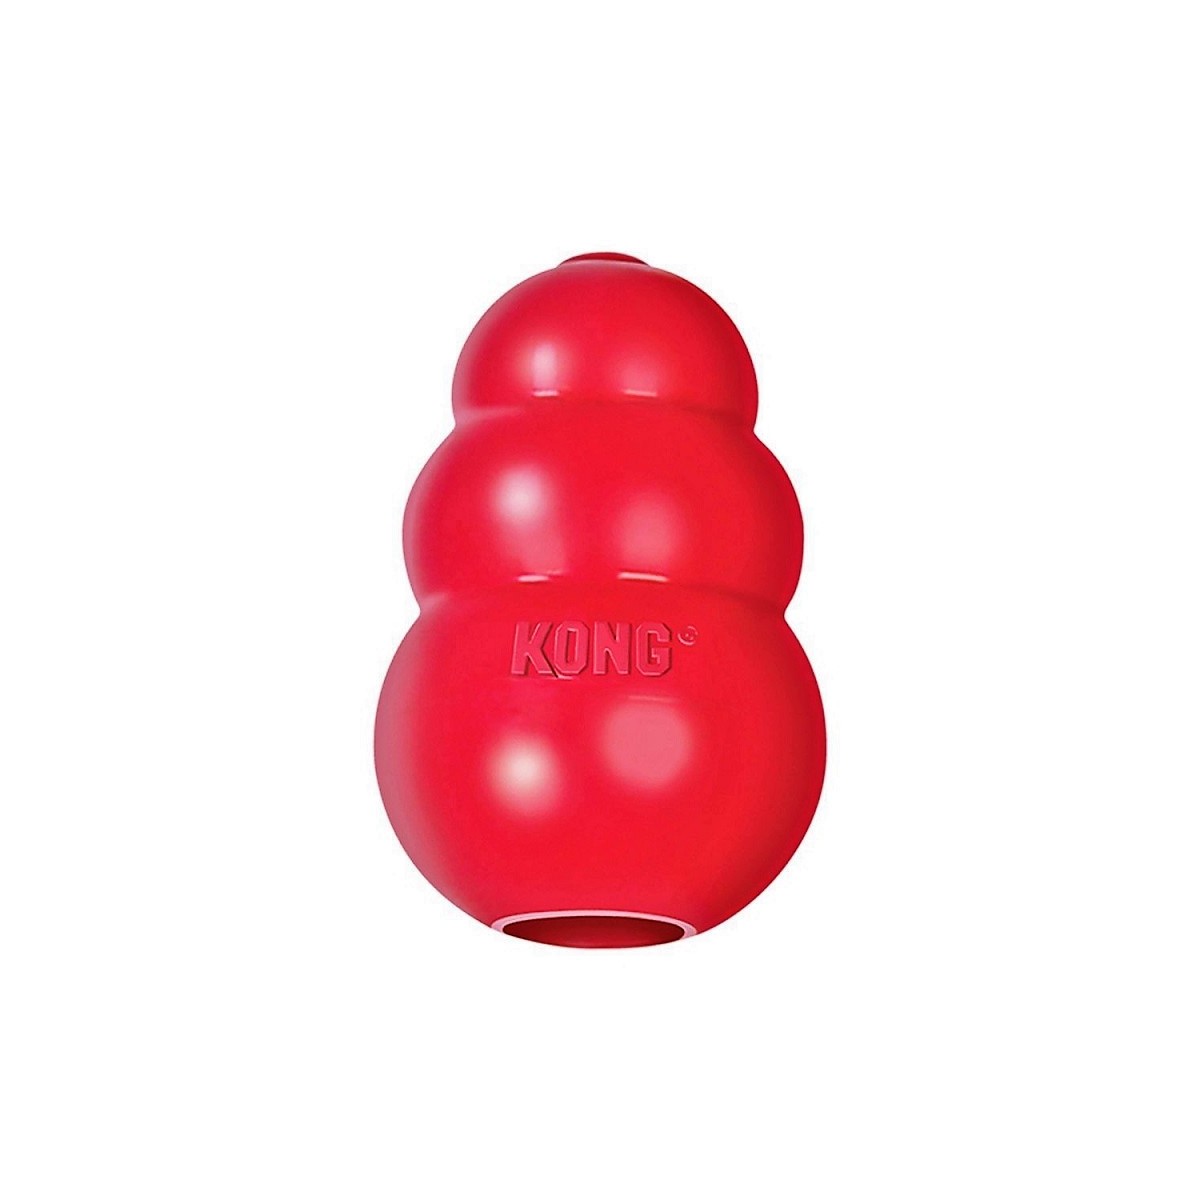 Конг игрушка купить. Kong Classic игрушка для собак "Конг" m средняя 8х6 см. Конг Классик для собак. Конг Классик игрушка для собак. Конг extreme игрушка для собак.